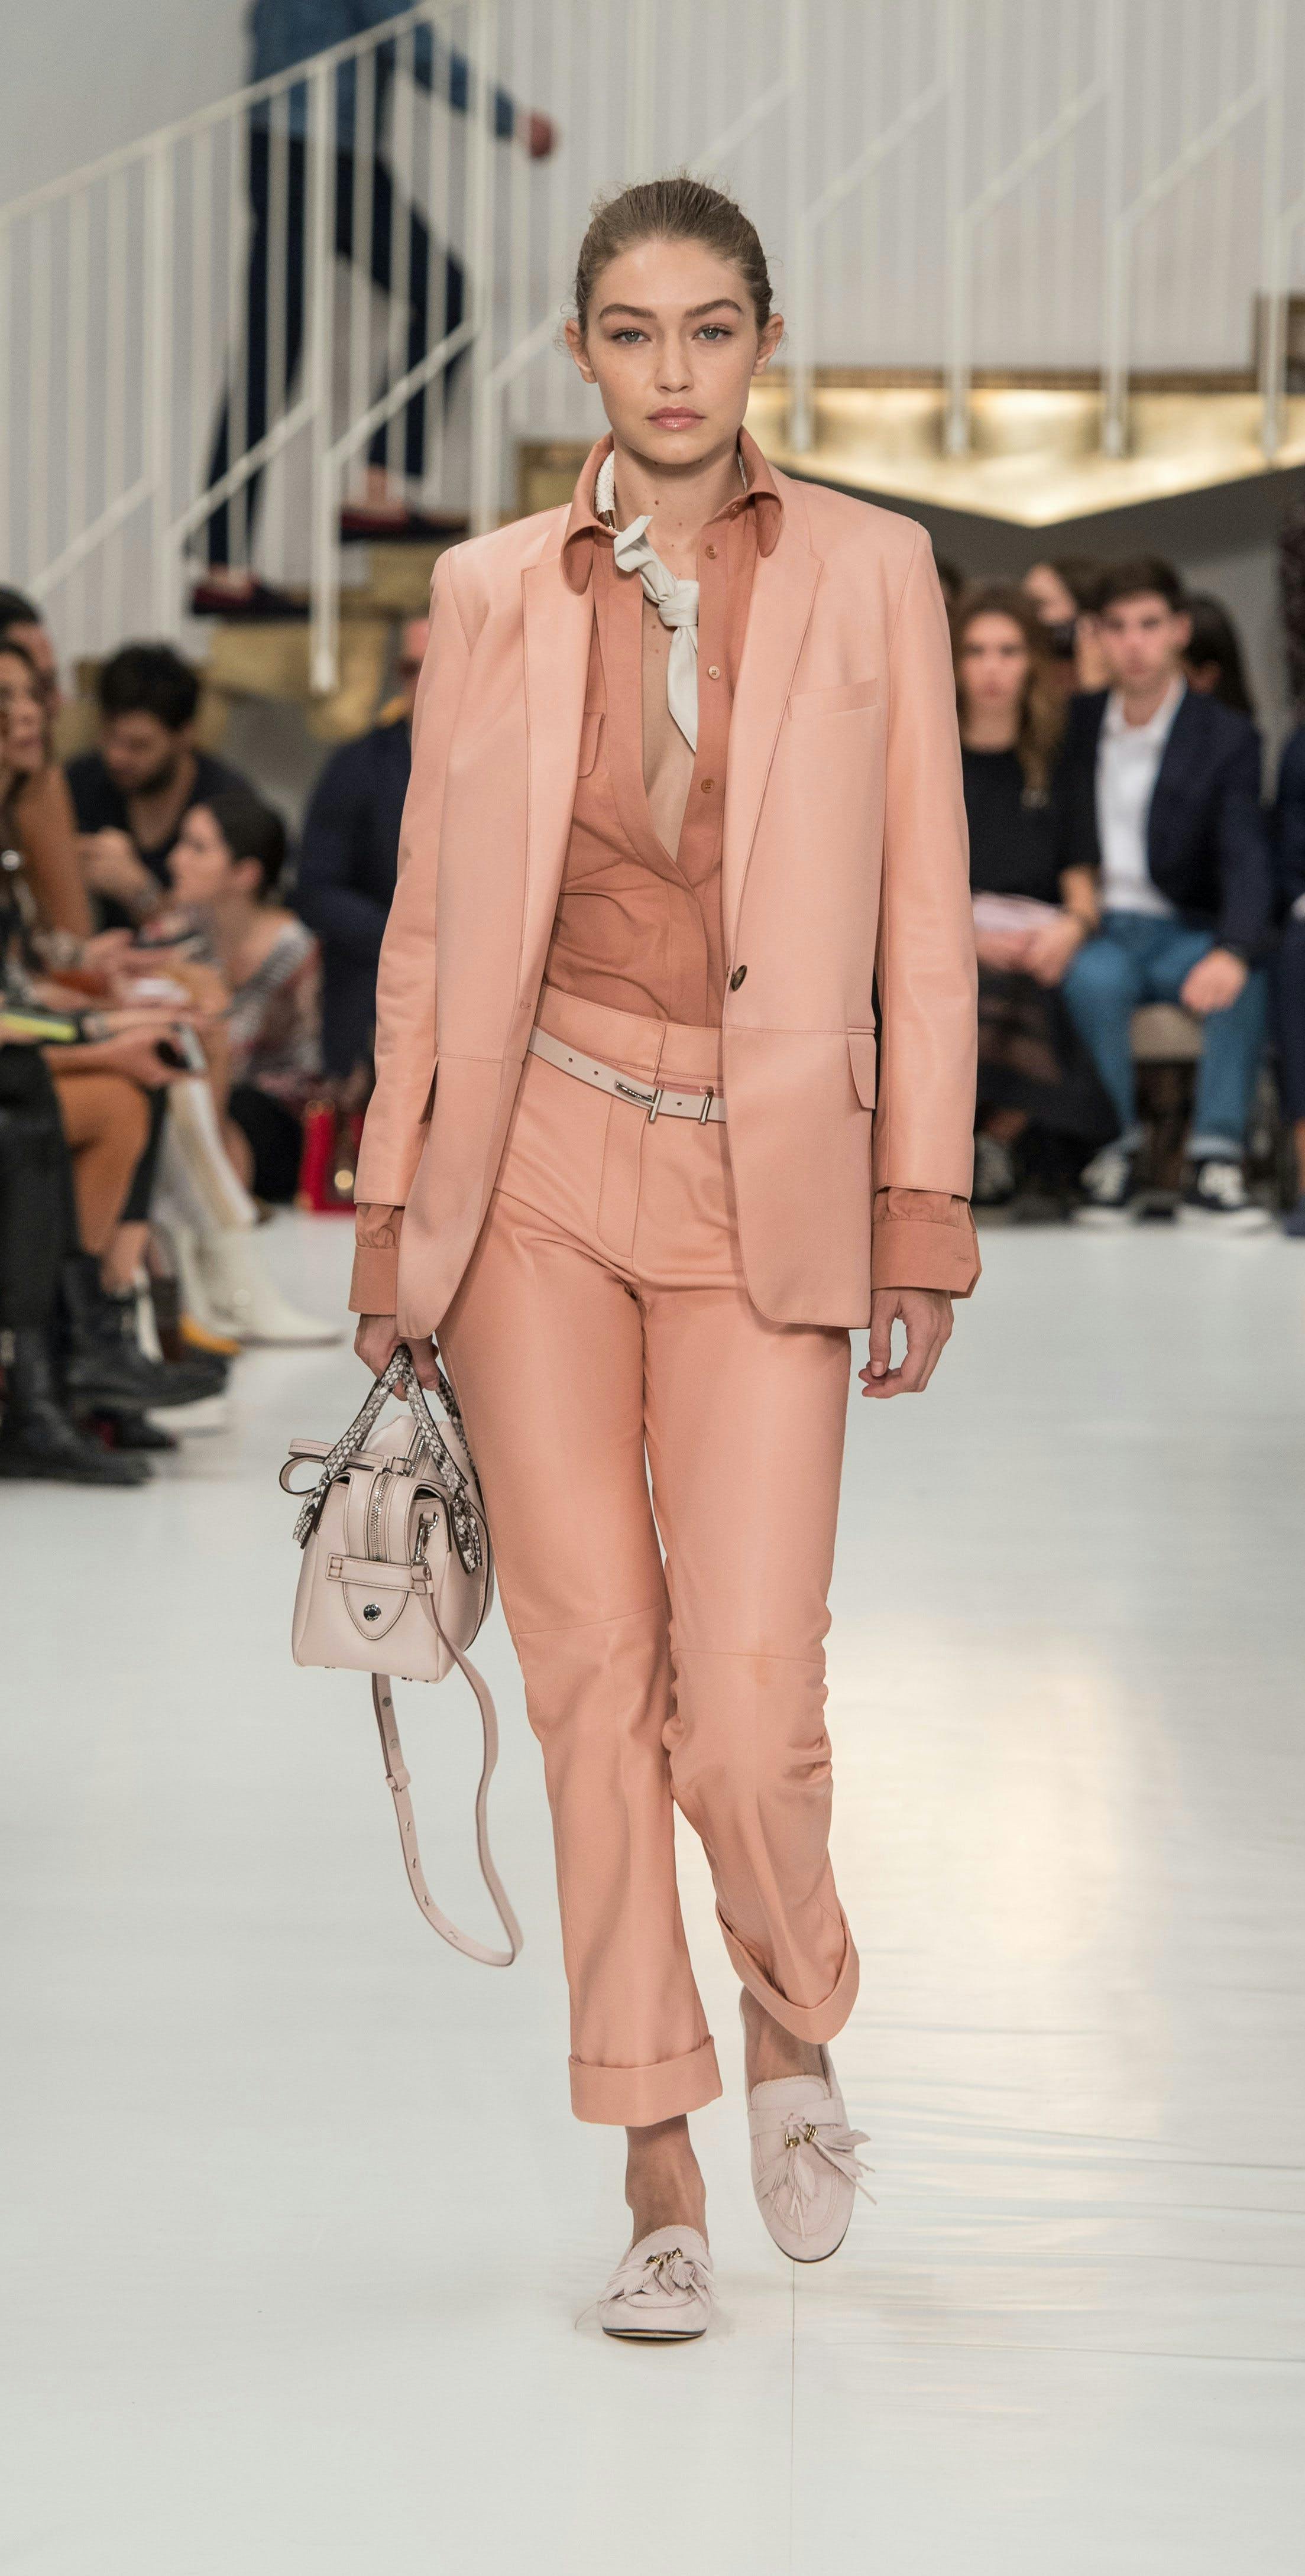 human person runway fashion clothing apparel coat